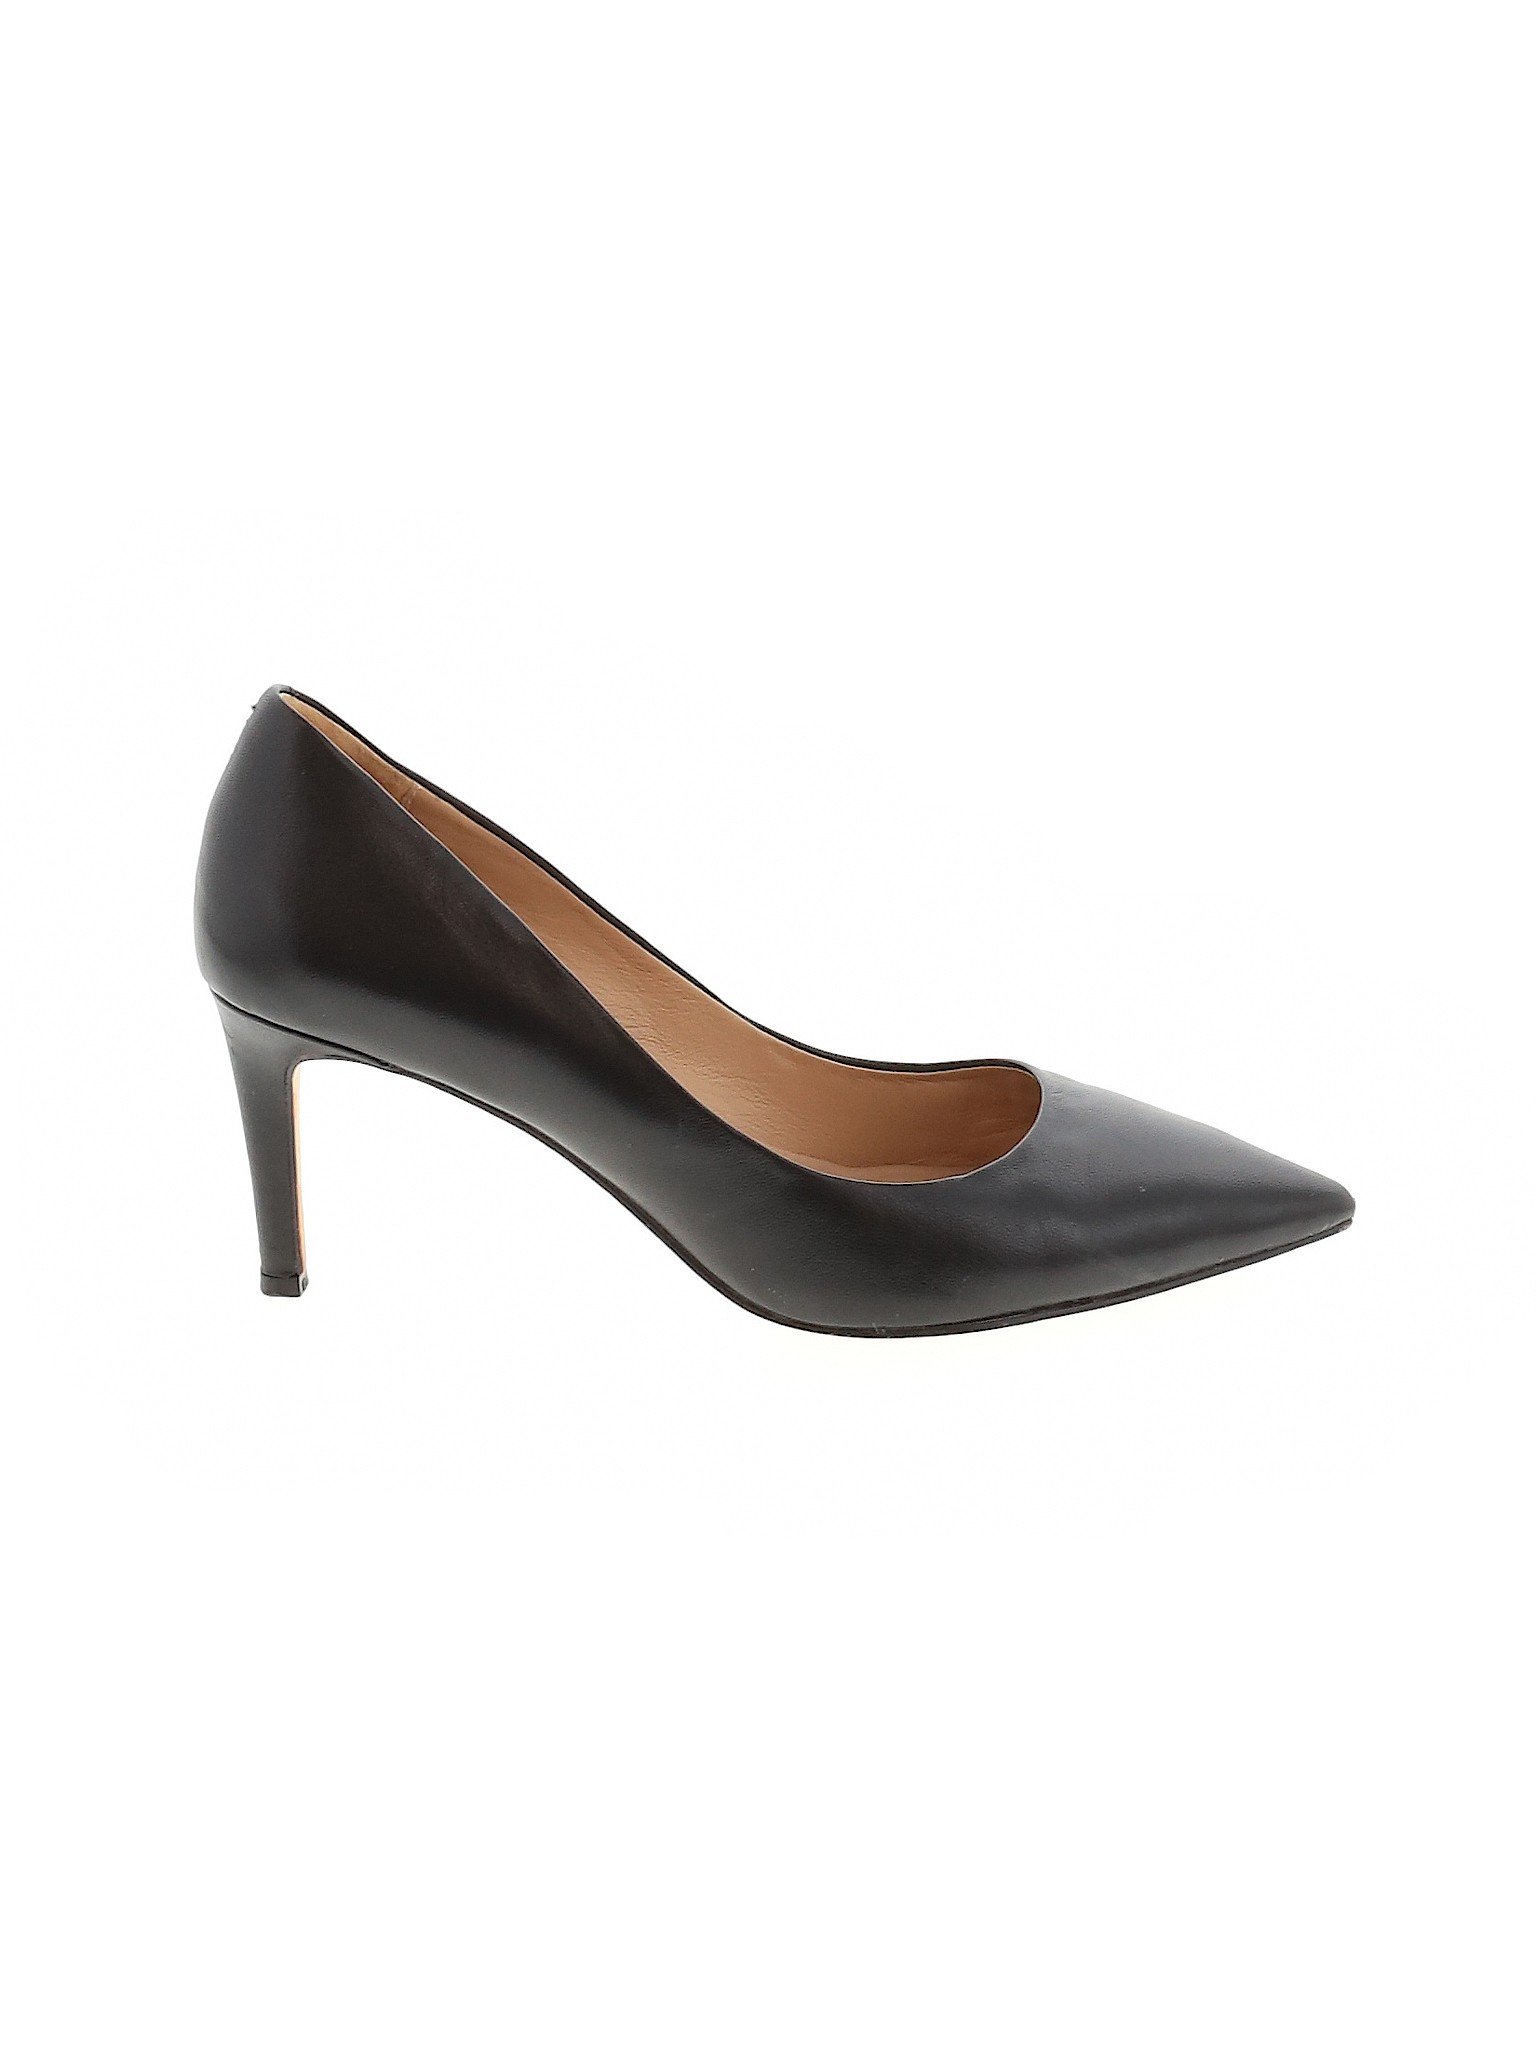 Diane von Furstenberg Women Black Heels US 7 | eBay